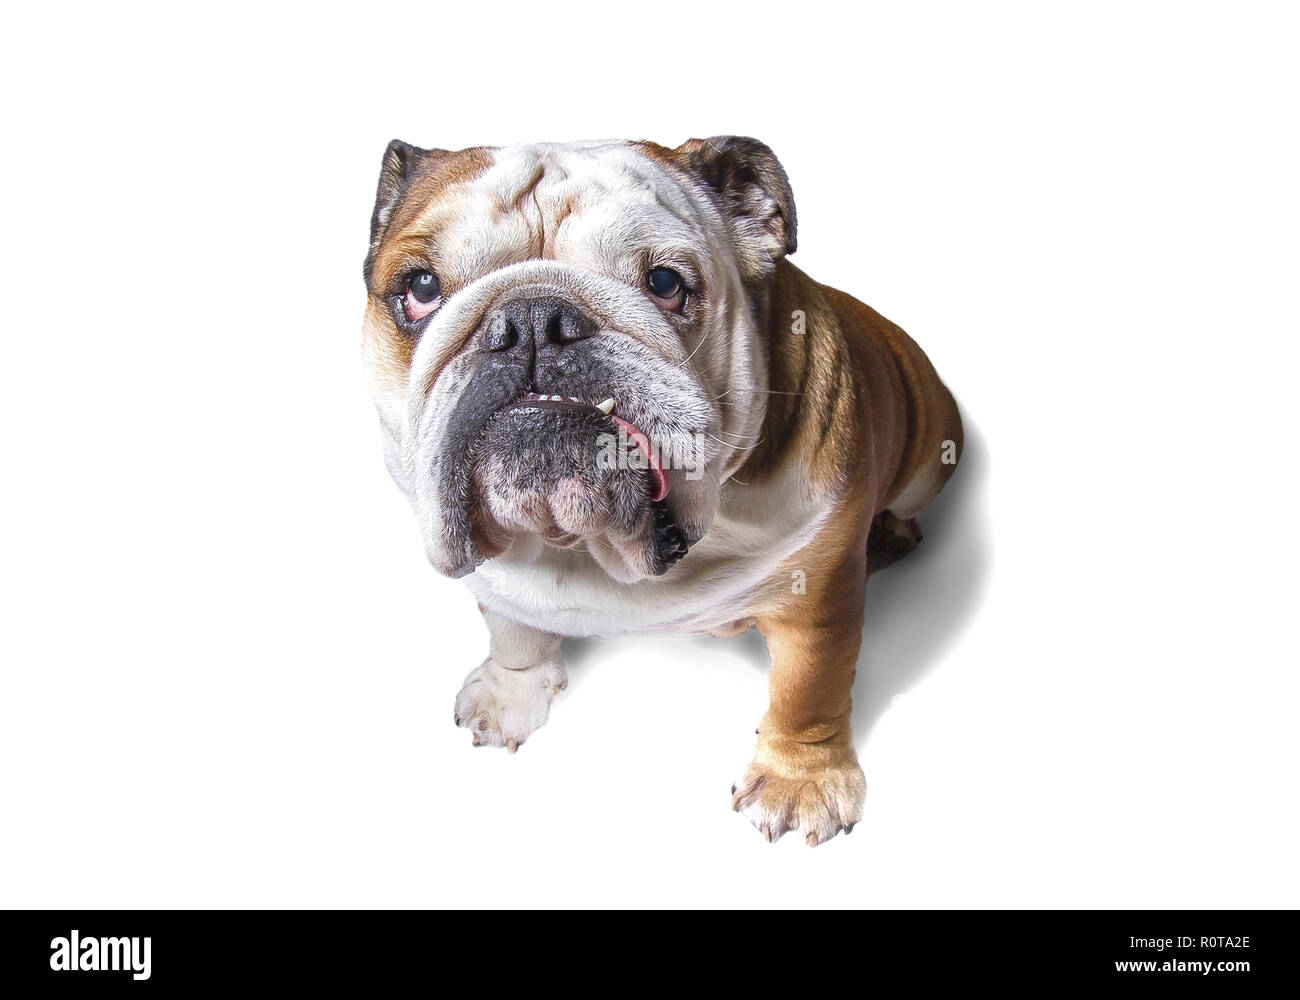 Englische Bulldogge schaut in die Kamera Stock Photo